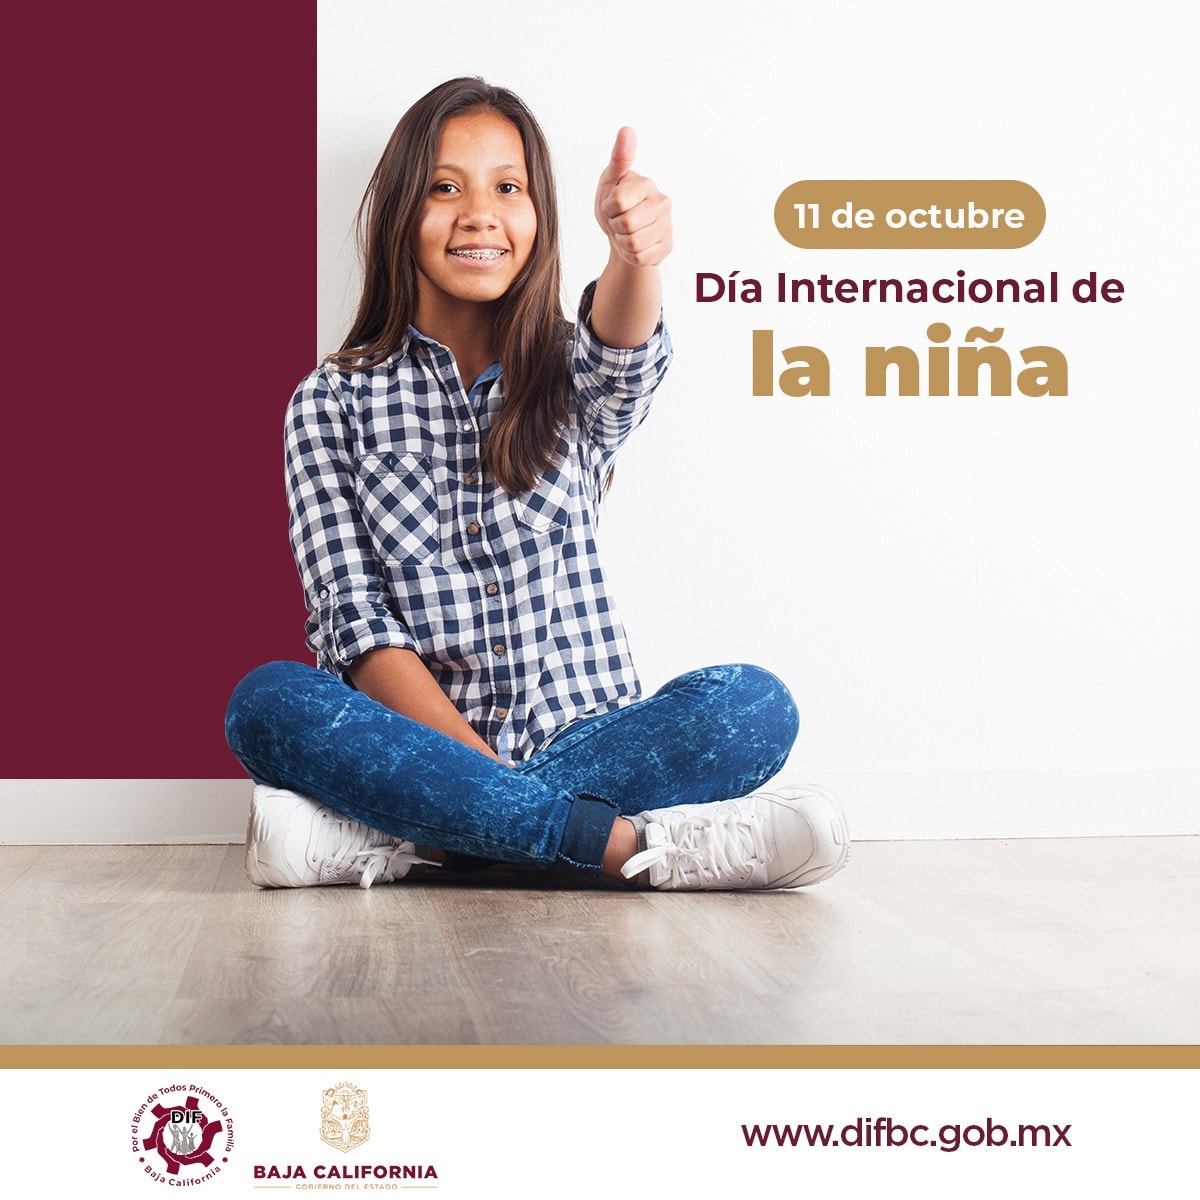 En DIF Baja California, somos promotores de la protección de los derechos de las niñas, así como de la concientización de sus derechos y contribuimos al fortalecimiento de sus capacidades. En DIF BC, servimos con cariño. #SomosDIF #SigueLaTransformaciónEnBC